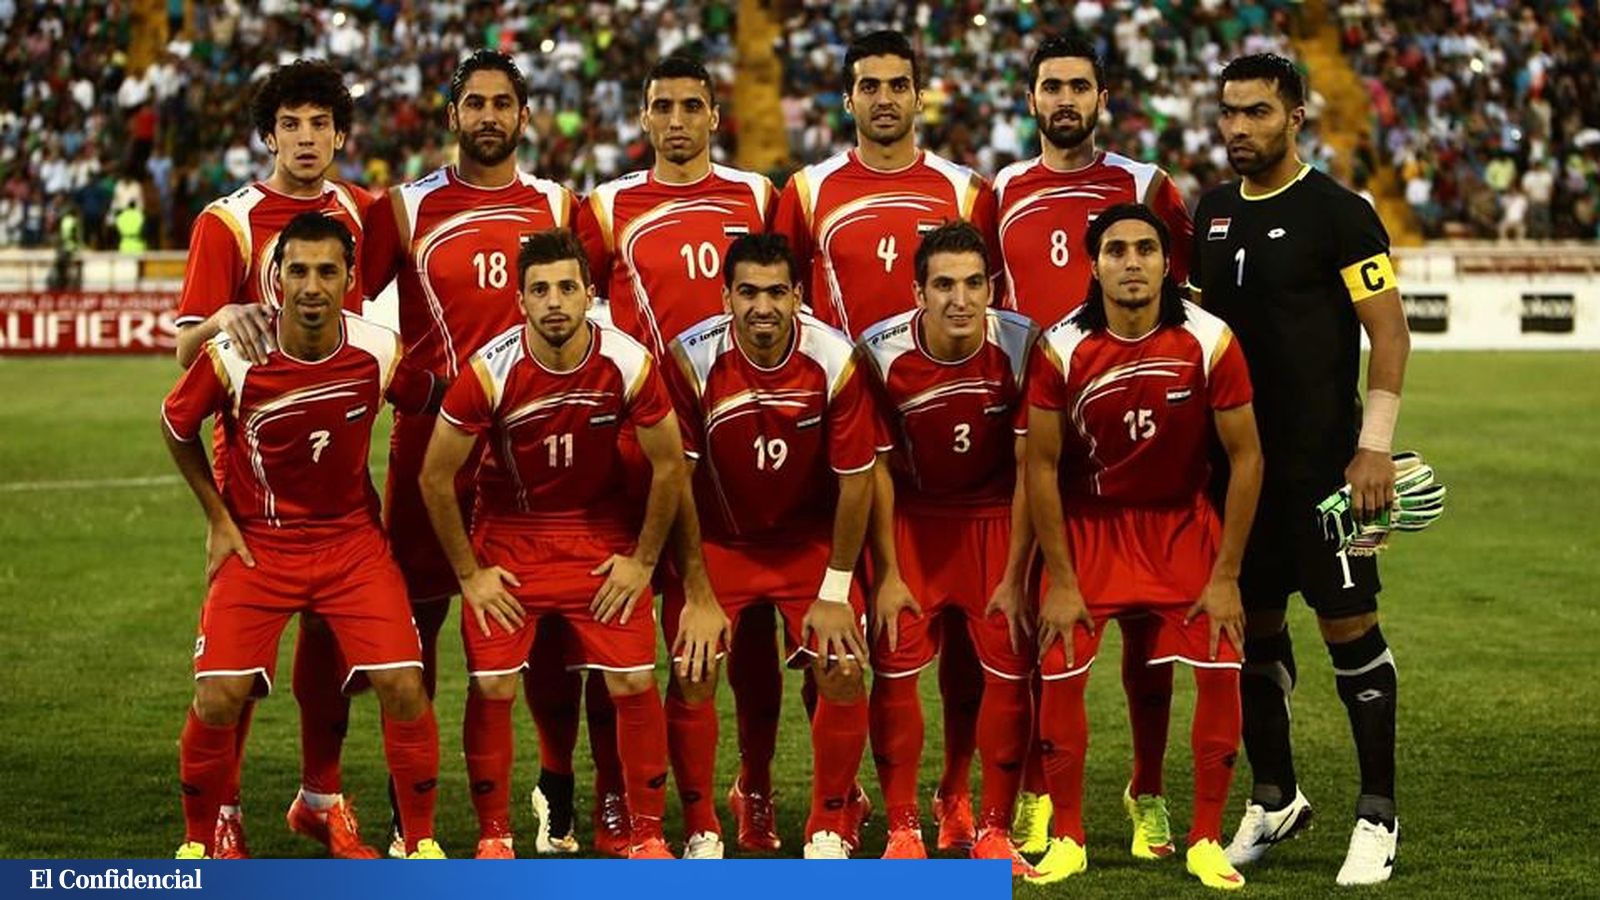 Guerra en Siria: La selección de fútbol de Siria también se refugia y sueña con estar en el Mundial